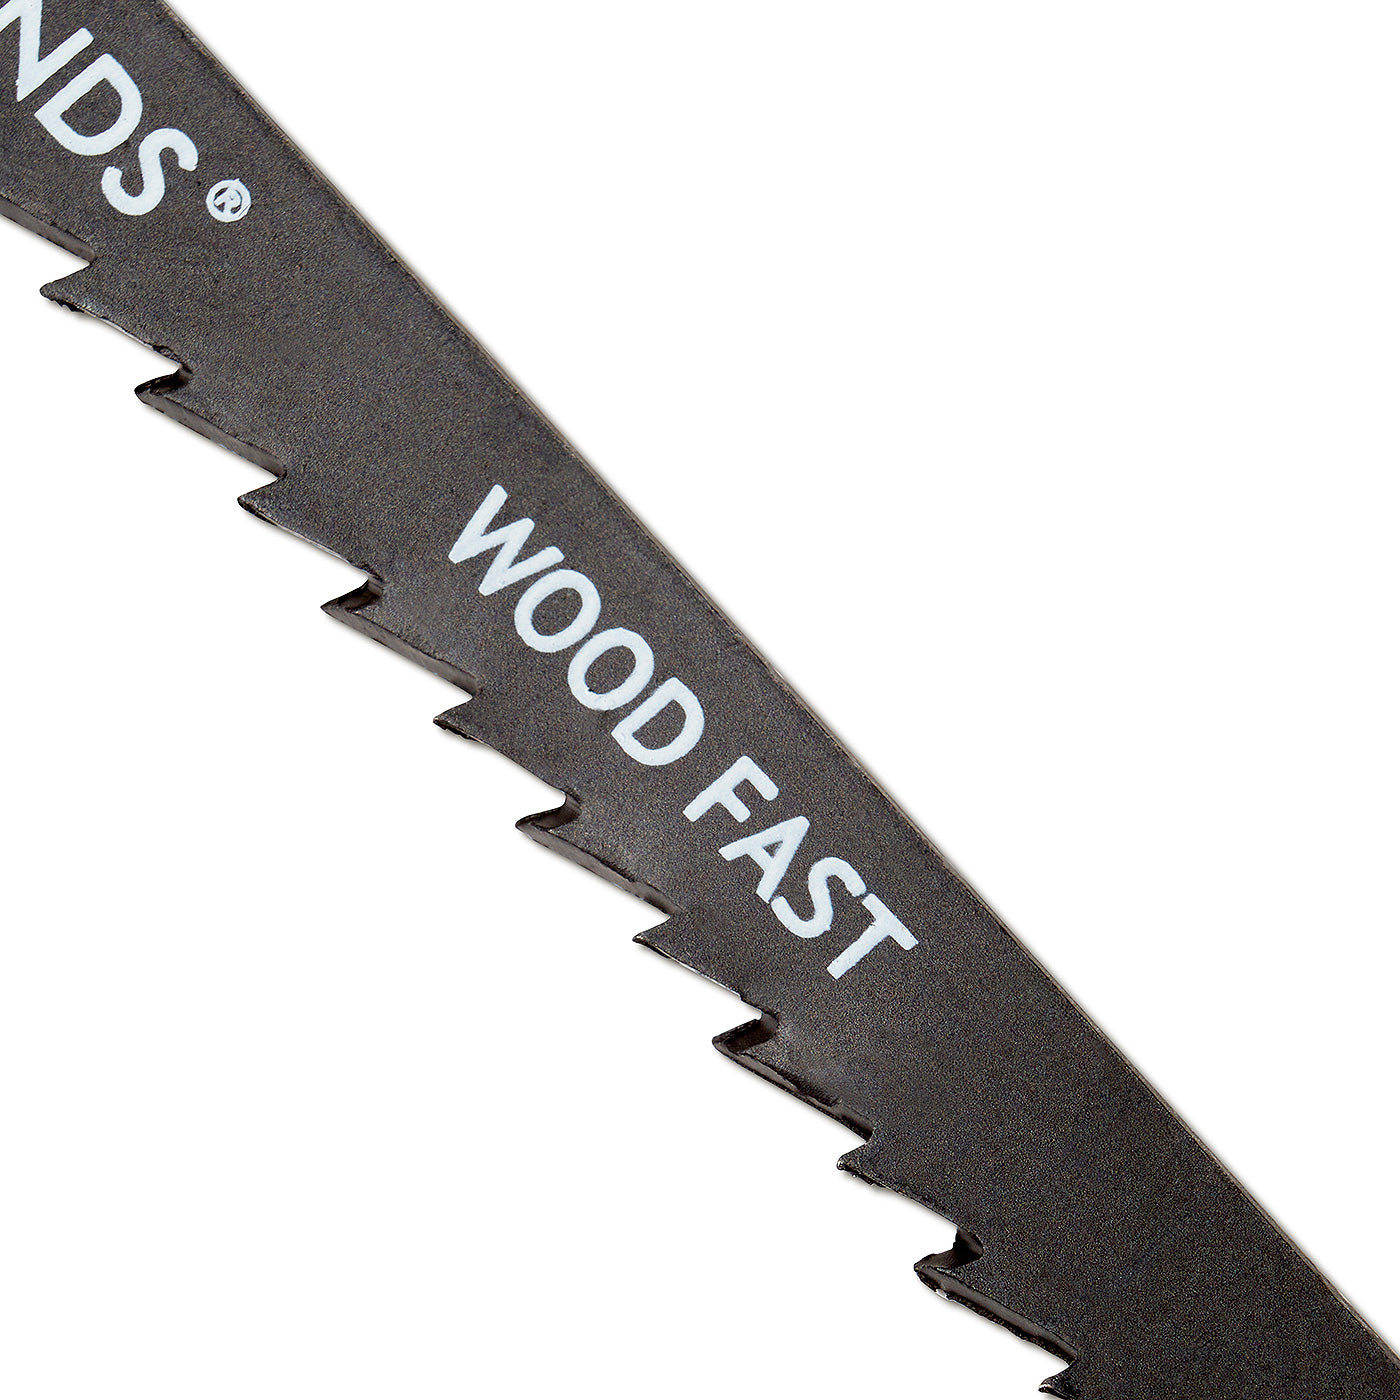 Jigsaw Blades - Wood Fast Cut - T144D - Pack of 5